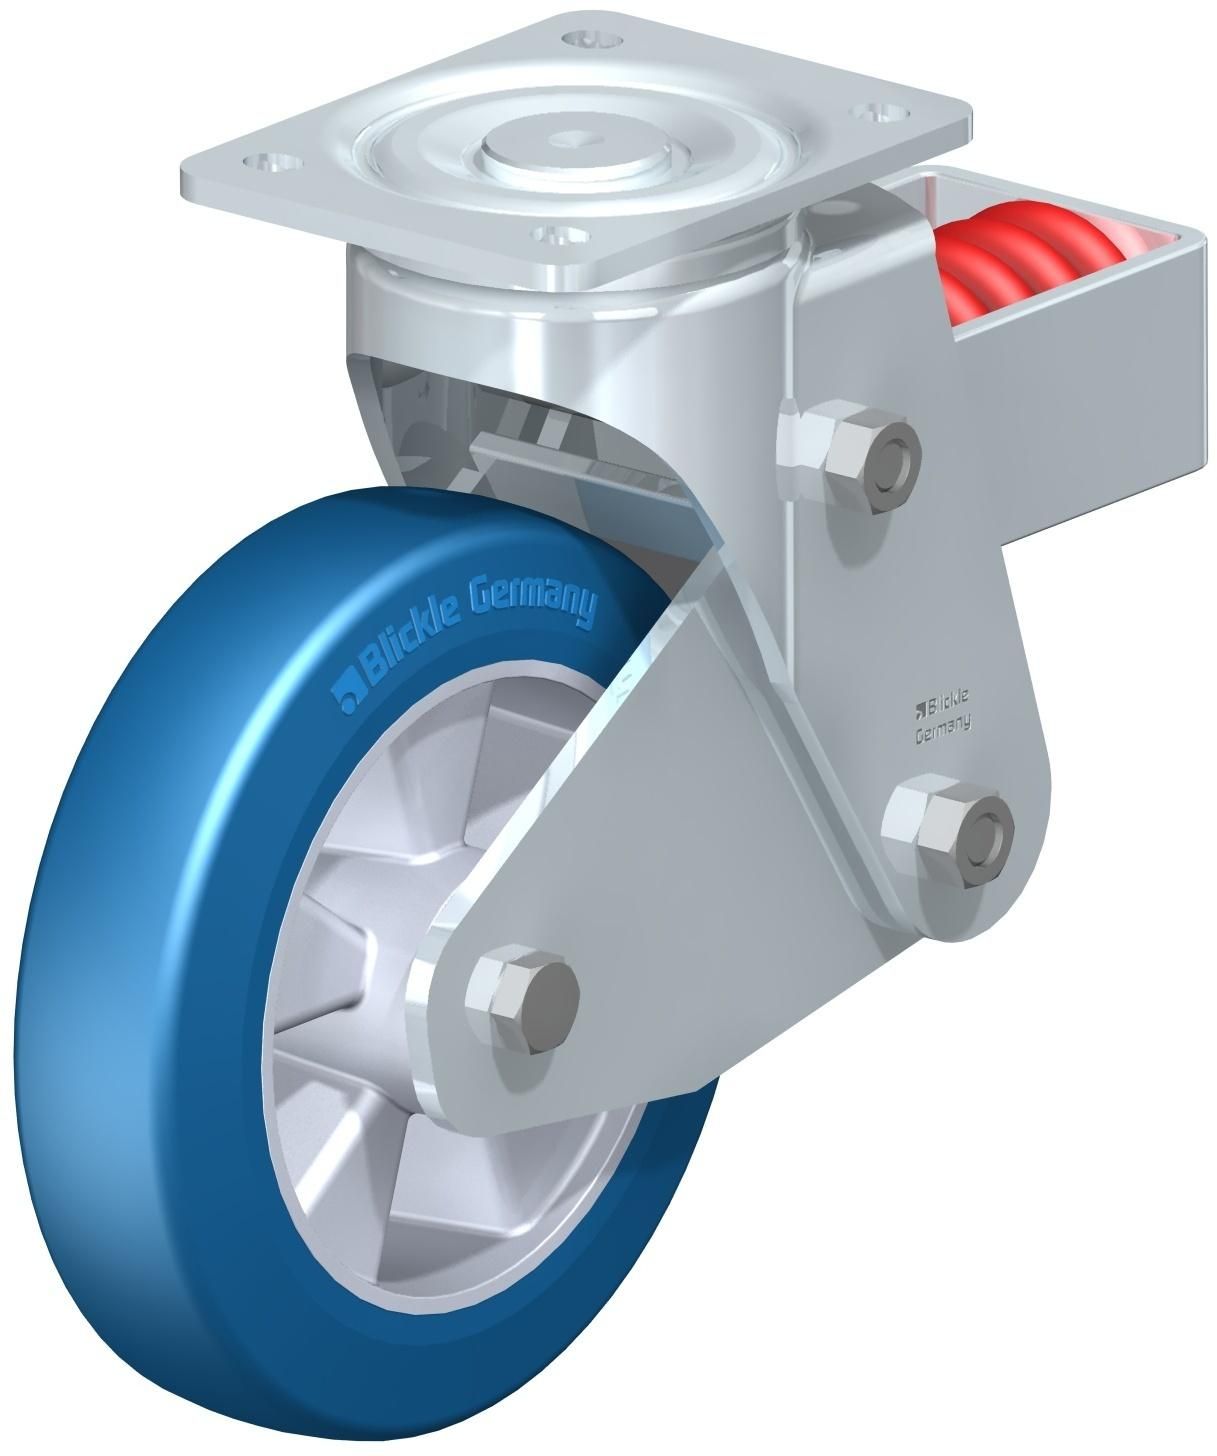 Blue shock wheel